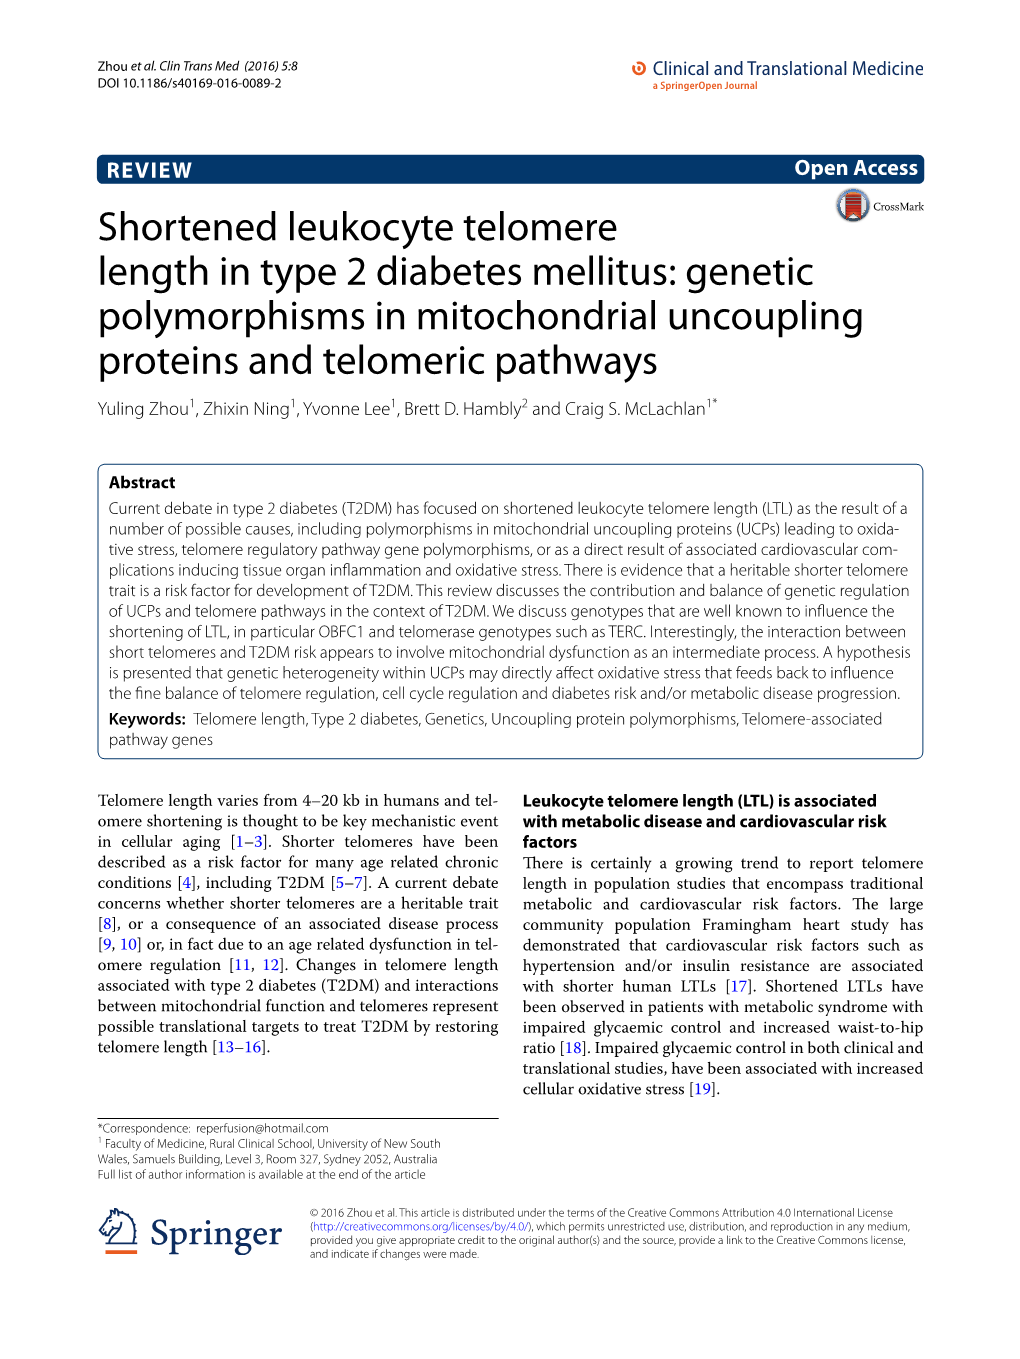 Shortened Leukocyte Telomere Length in Type 2 Diabetes Mellitus: Genetic